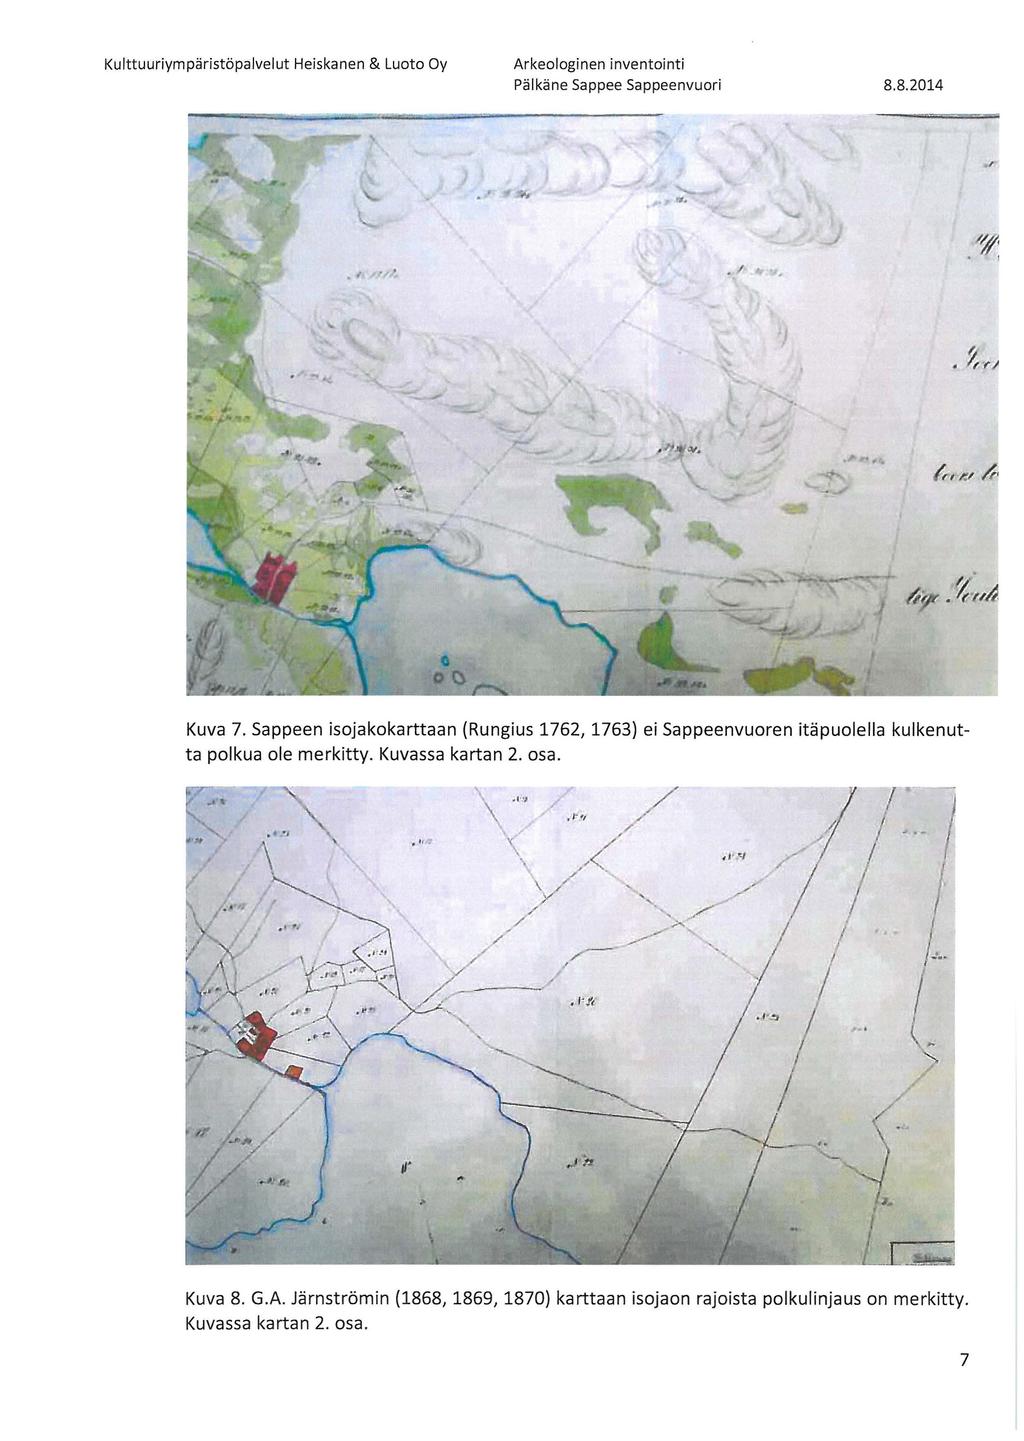 /~ 1 Kuva 7. Sappeen isojakokarttaan (Rungius 1762, 1763} ei Sappeenvuoren itäpuolella kulkenutta polkua ole merkitty. Kuvassa kartan 2. osa.. t ~.~ / " '< / \.< ' 1 ) ' 1.